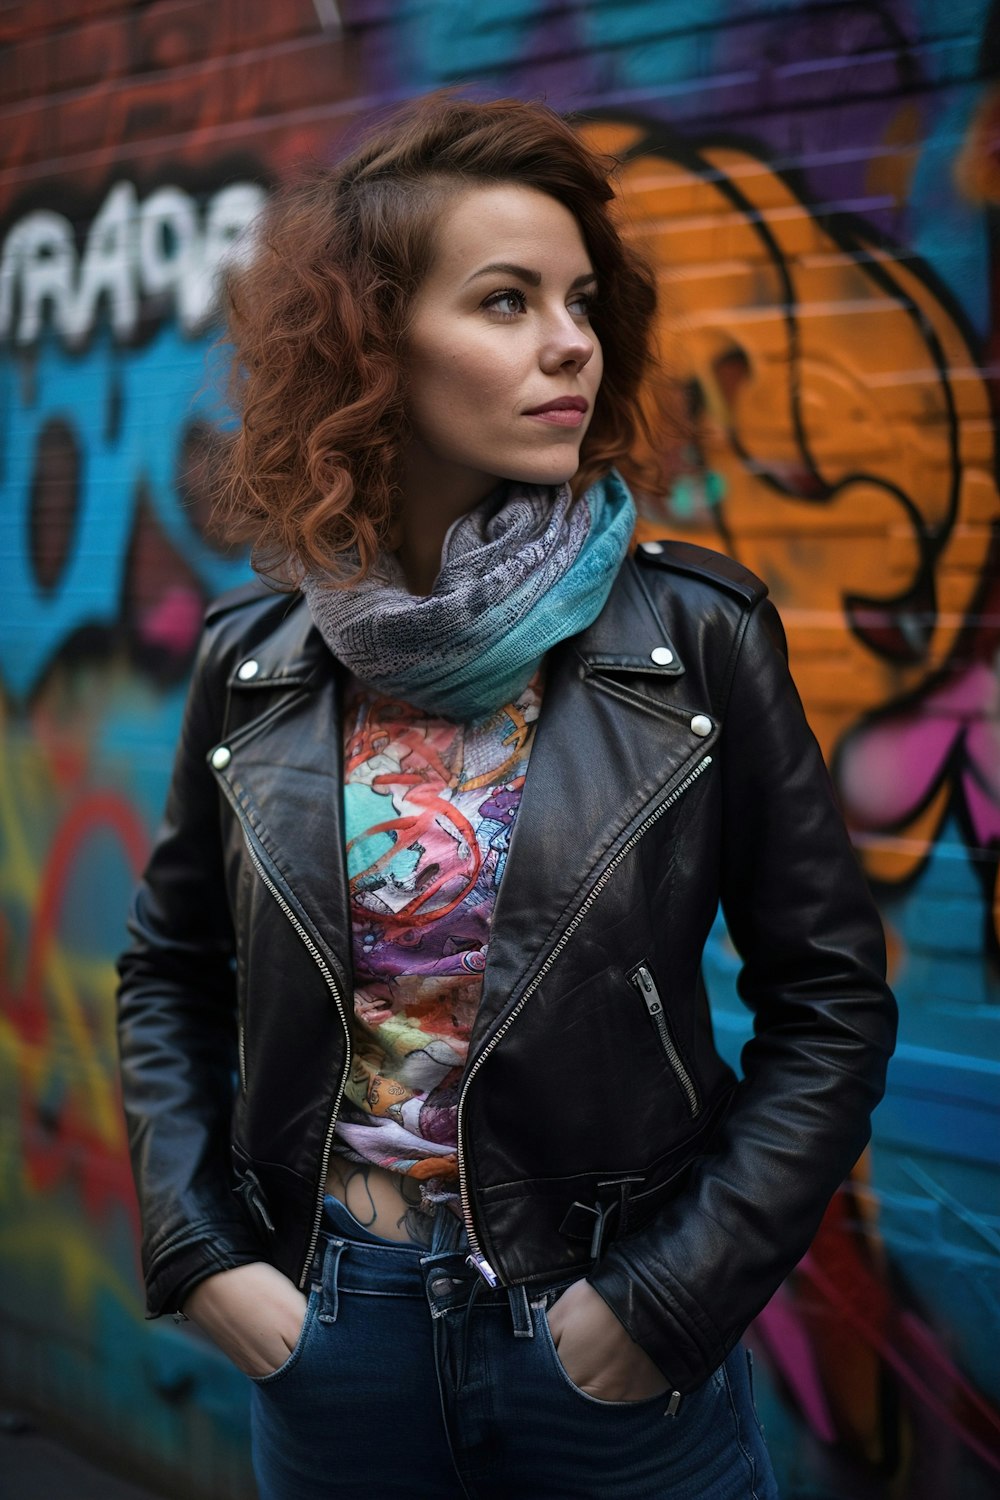 Eine Frau steht vor einer mit Graffiti beschmierten Wand